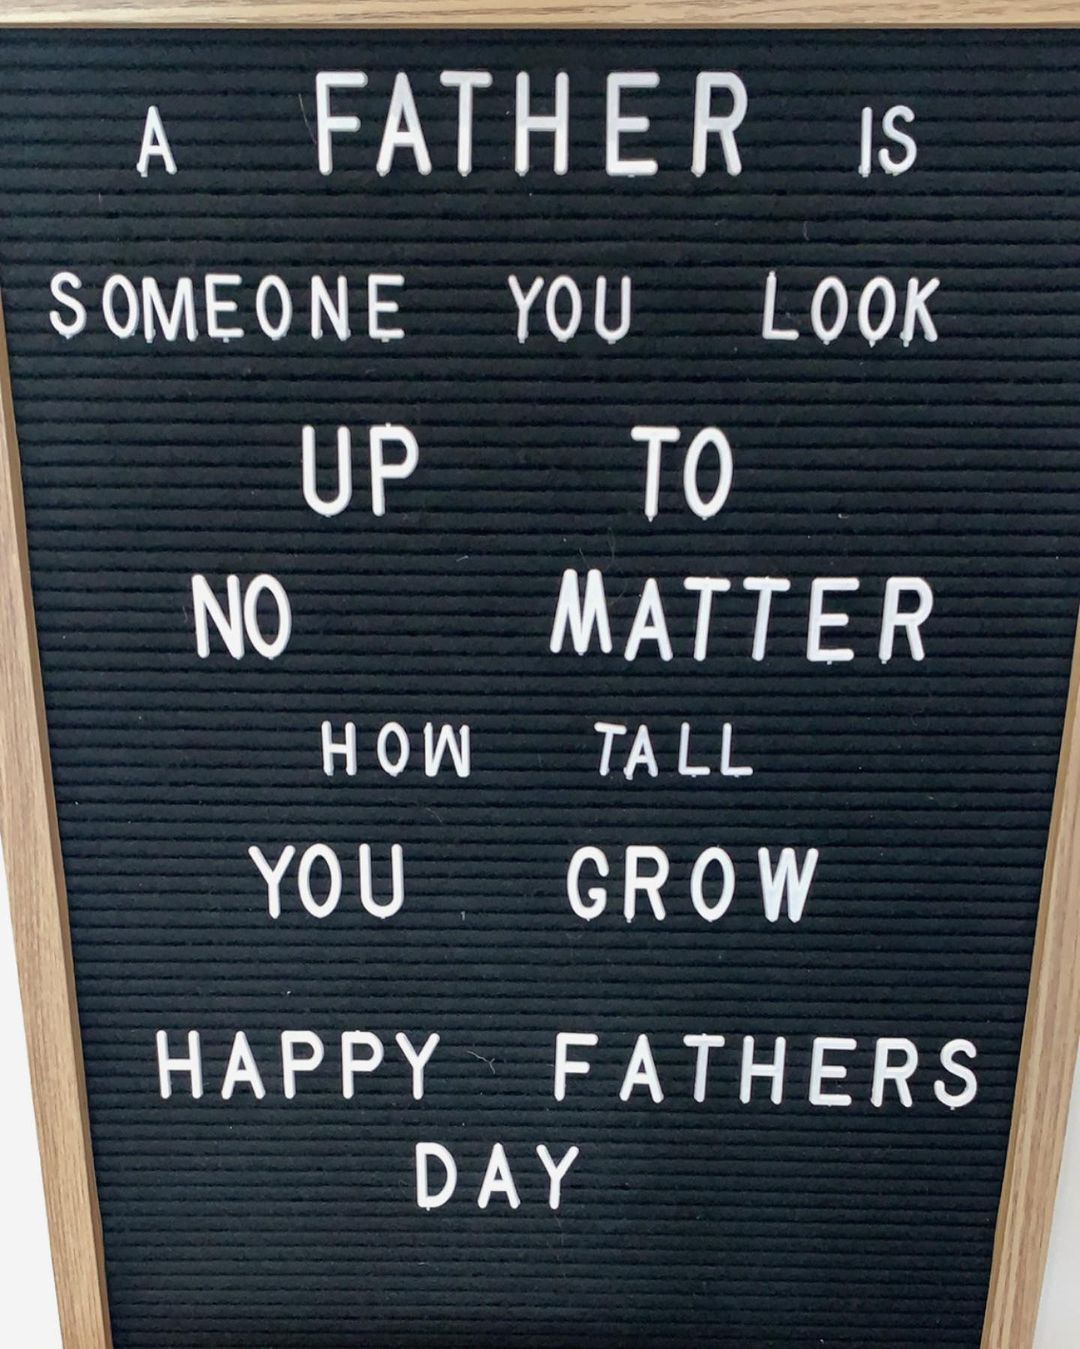 Happy Fathers Day!
👮‍♂️👷‍♂️🕵️‍♂️👨‍⚕️👨‍🍳👨‍🌾👨‍🏫👨‍💻🧑‍🔧👨‍💼🦸‍♂️
